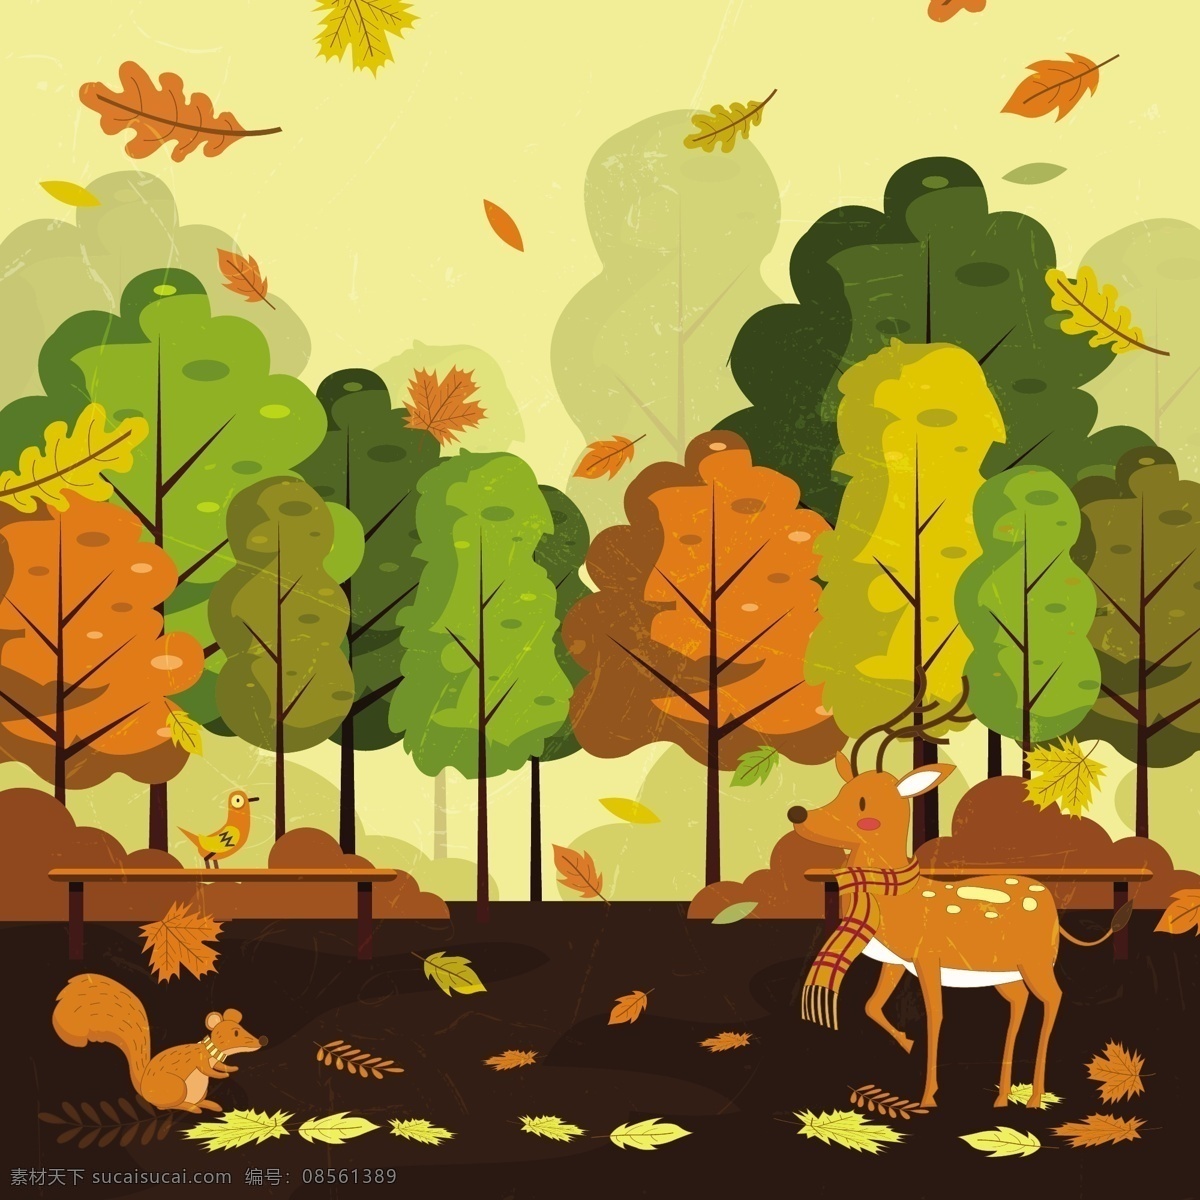 秋天 森林 风景 背景 金黄色的森林 落叶 麋鹿 松鼠